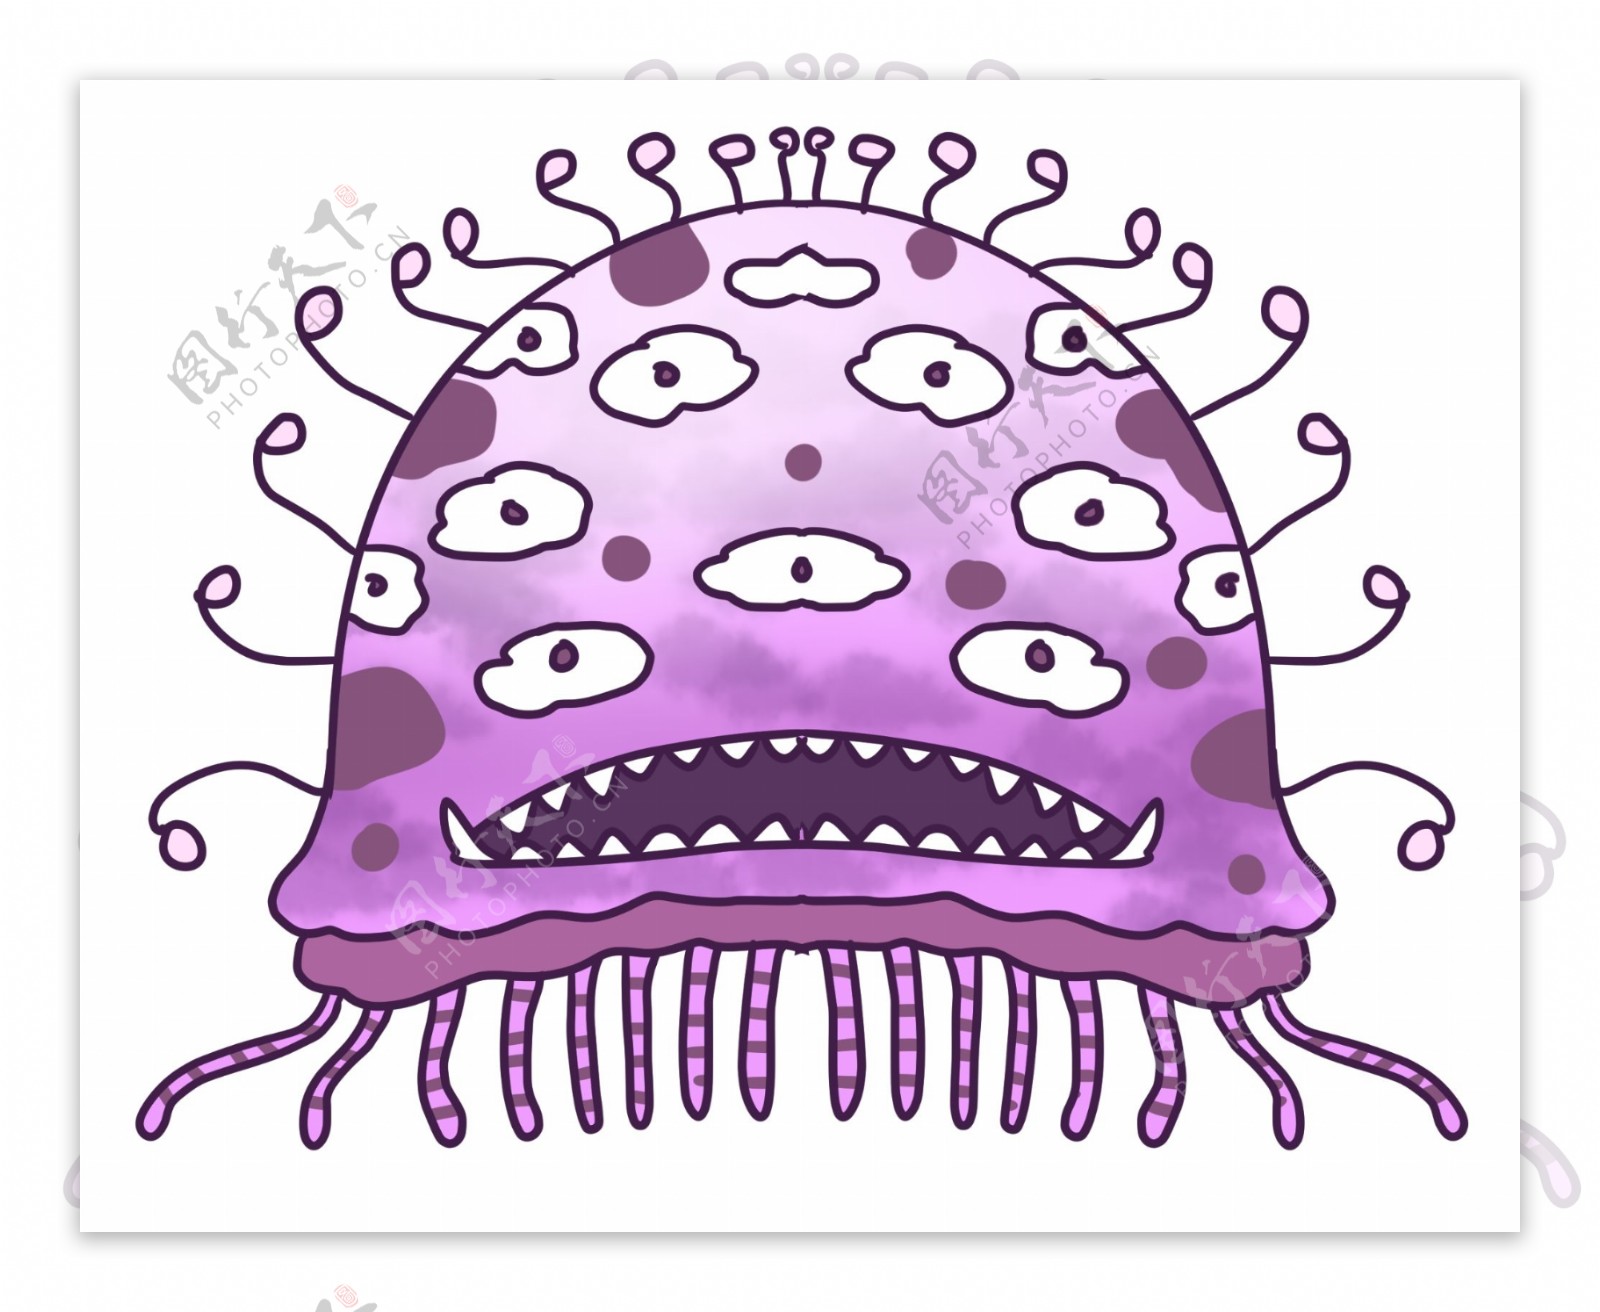 卡通紫色病毒插画